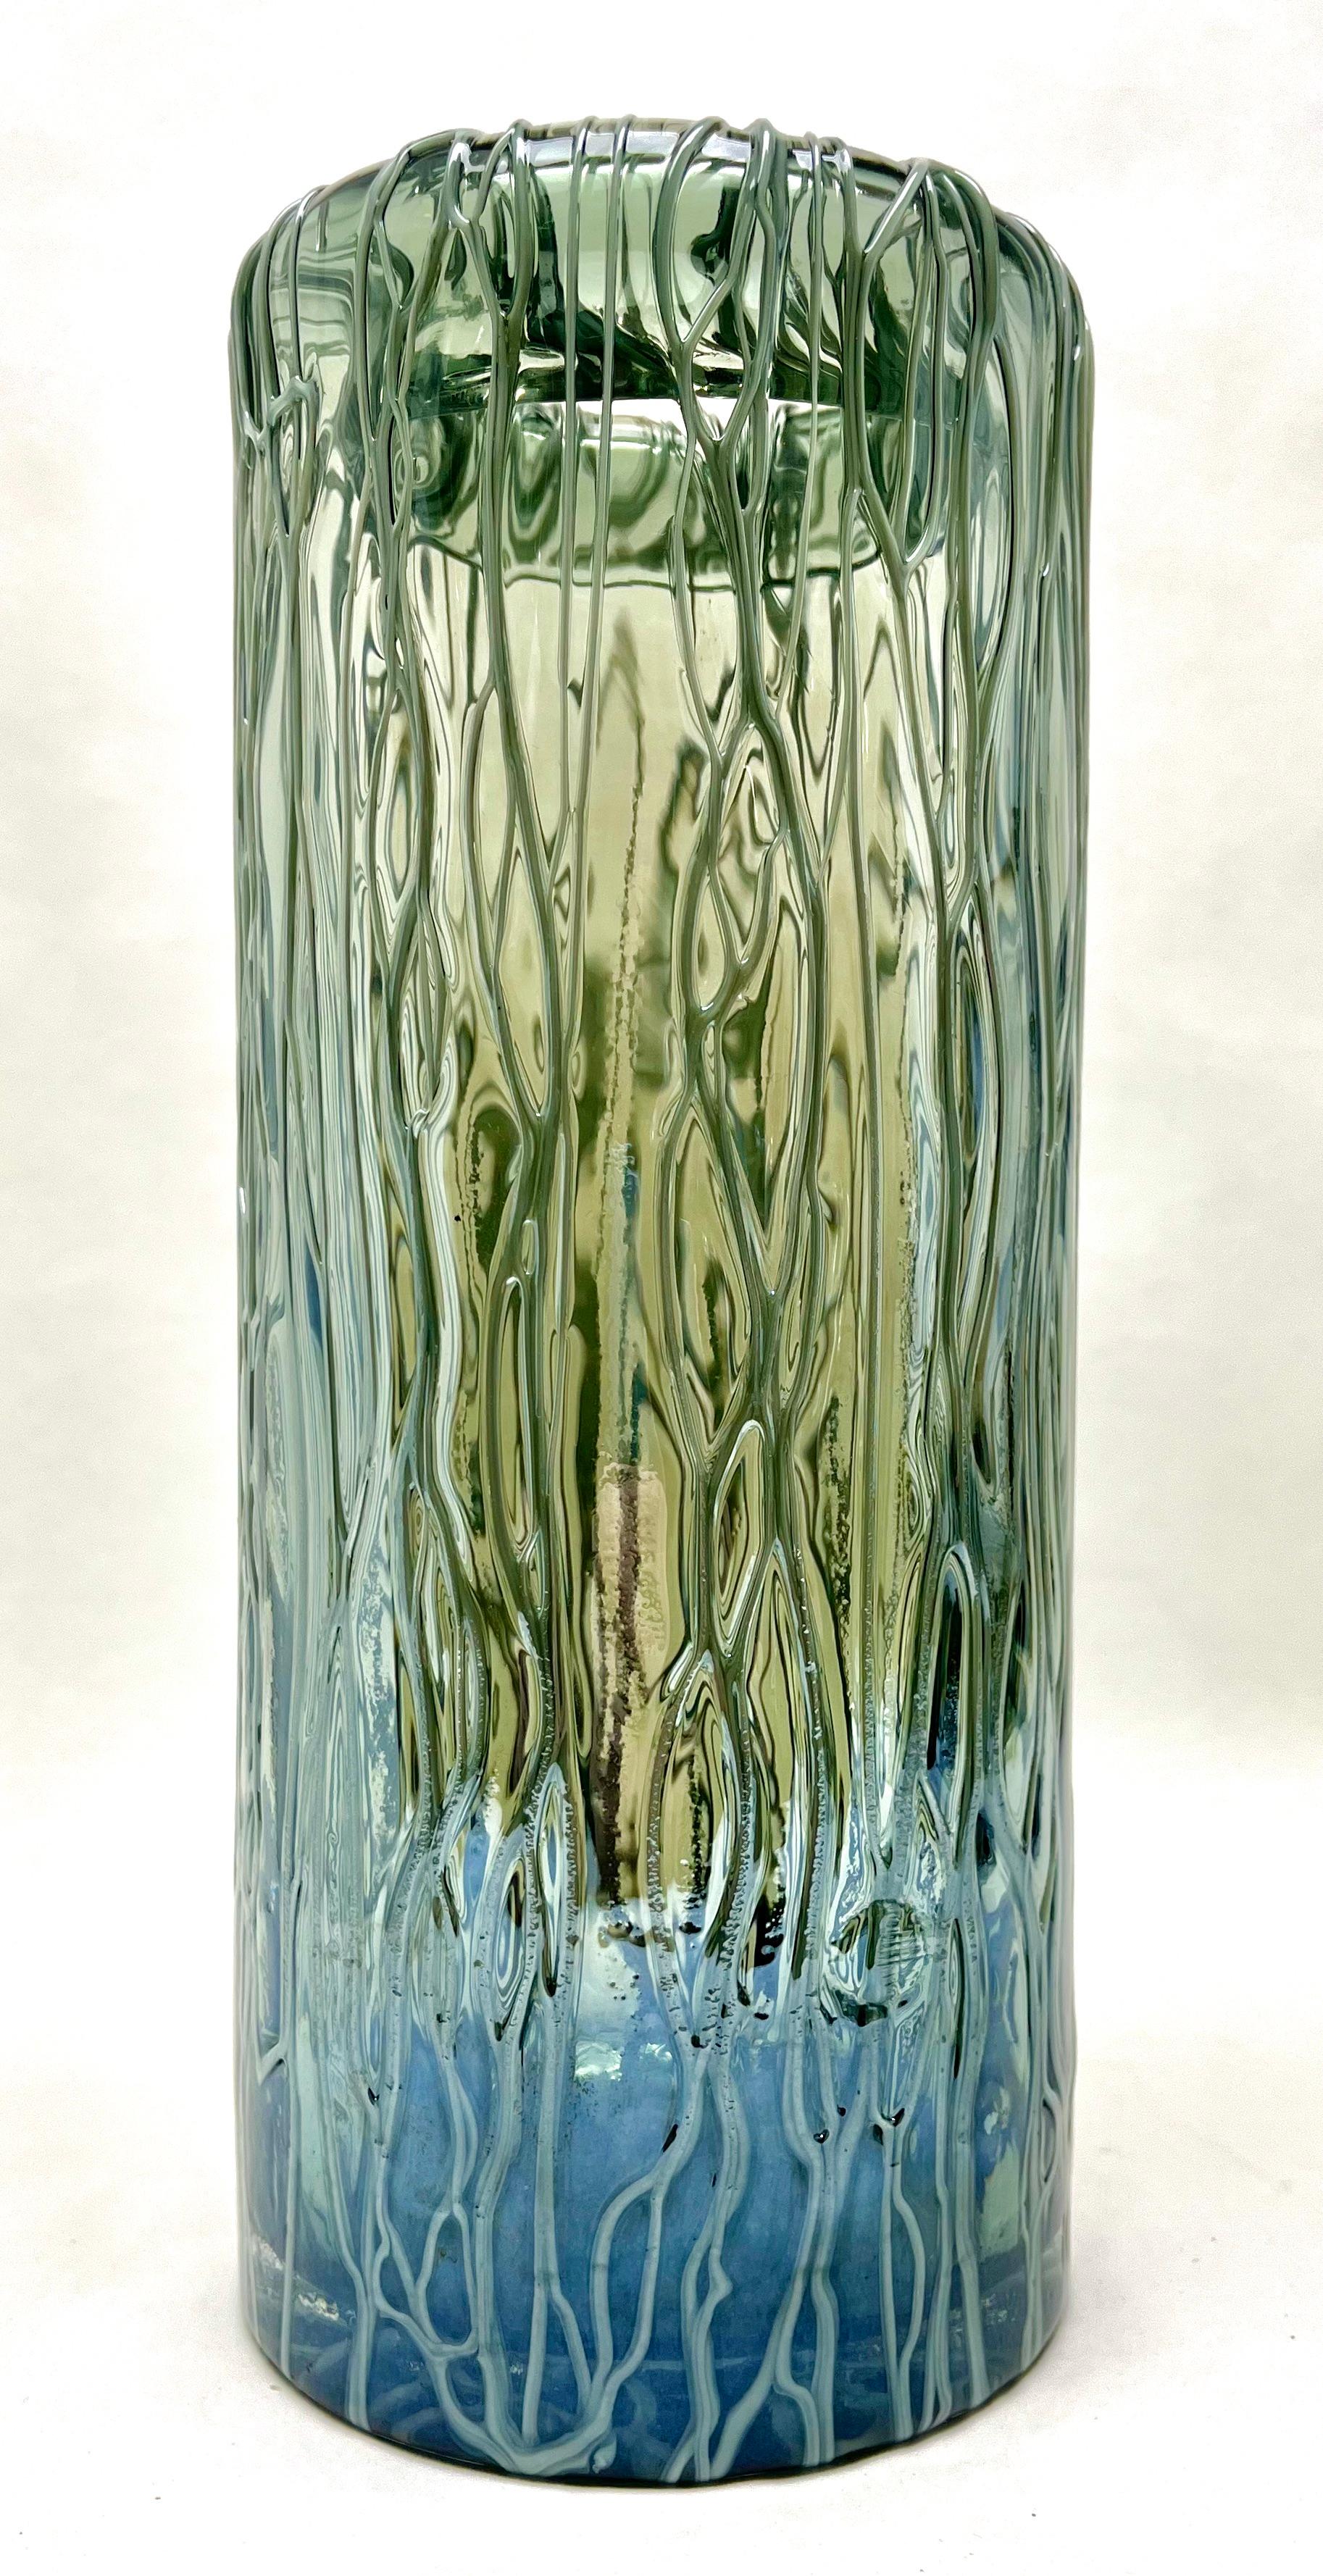 La vasse de Murano est fabriquée à la main avec des fils fondus.

La photographie ne parvient pas à capturer les élégances simples du vase

Taille du vase : 28 cm x 11,5 cm
Poids 1.8 Kg.


